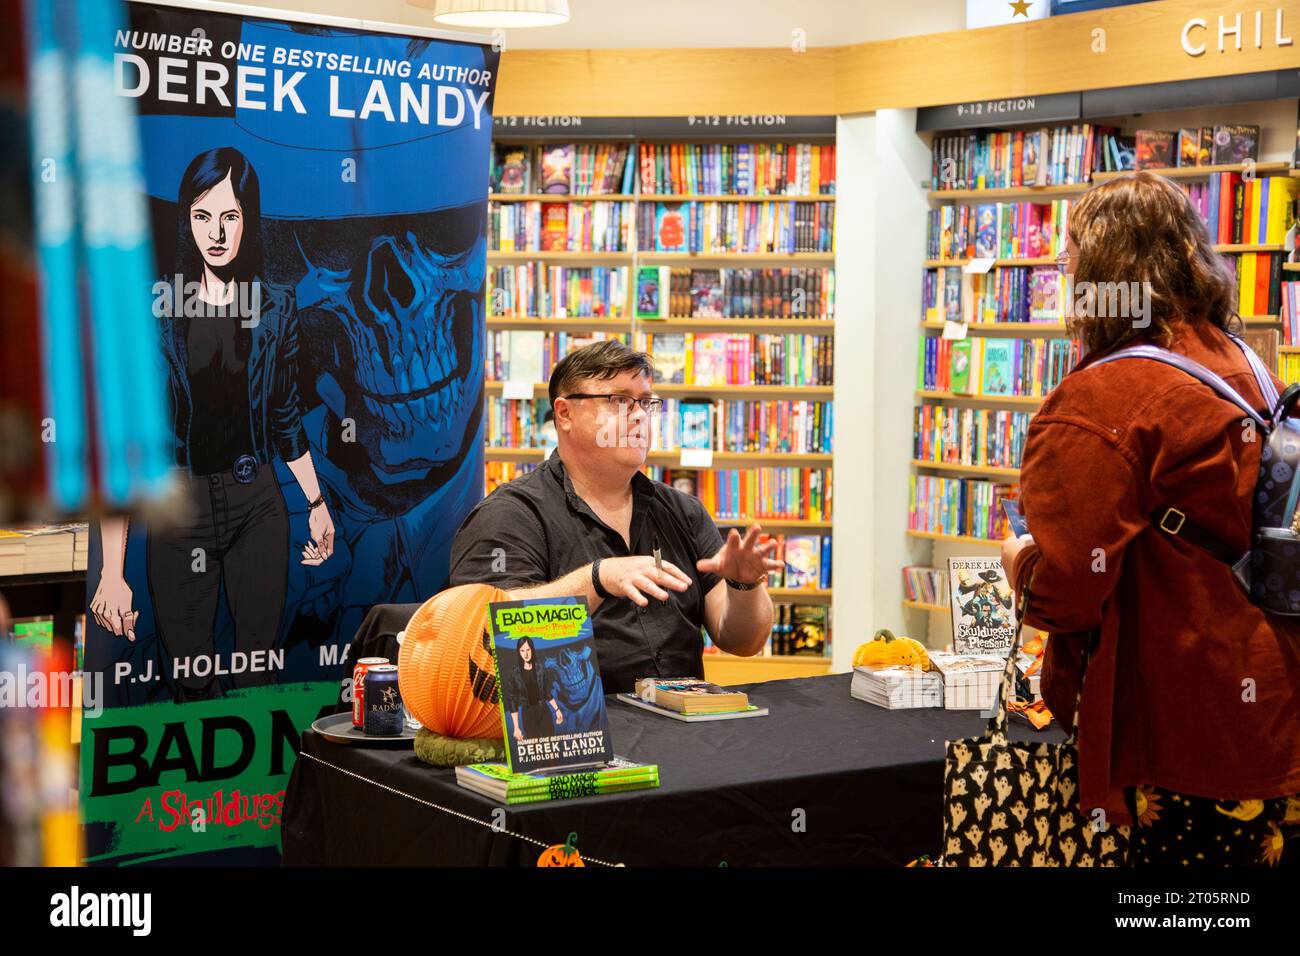 Derek Landy irischer Autor, Drehbuchautor und Autor von The Skulduggery Pleasant Books erscheint bei Waterstones in Exeter Stockfoto